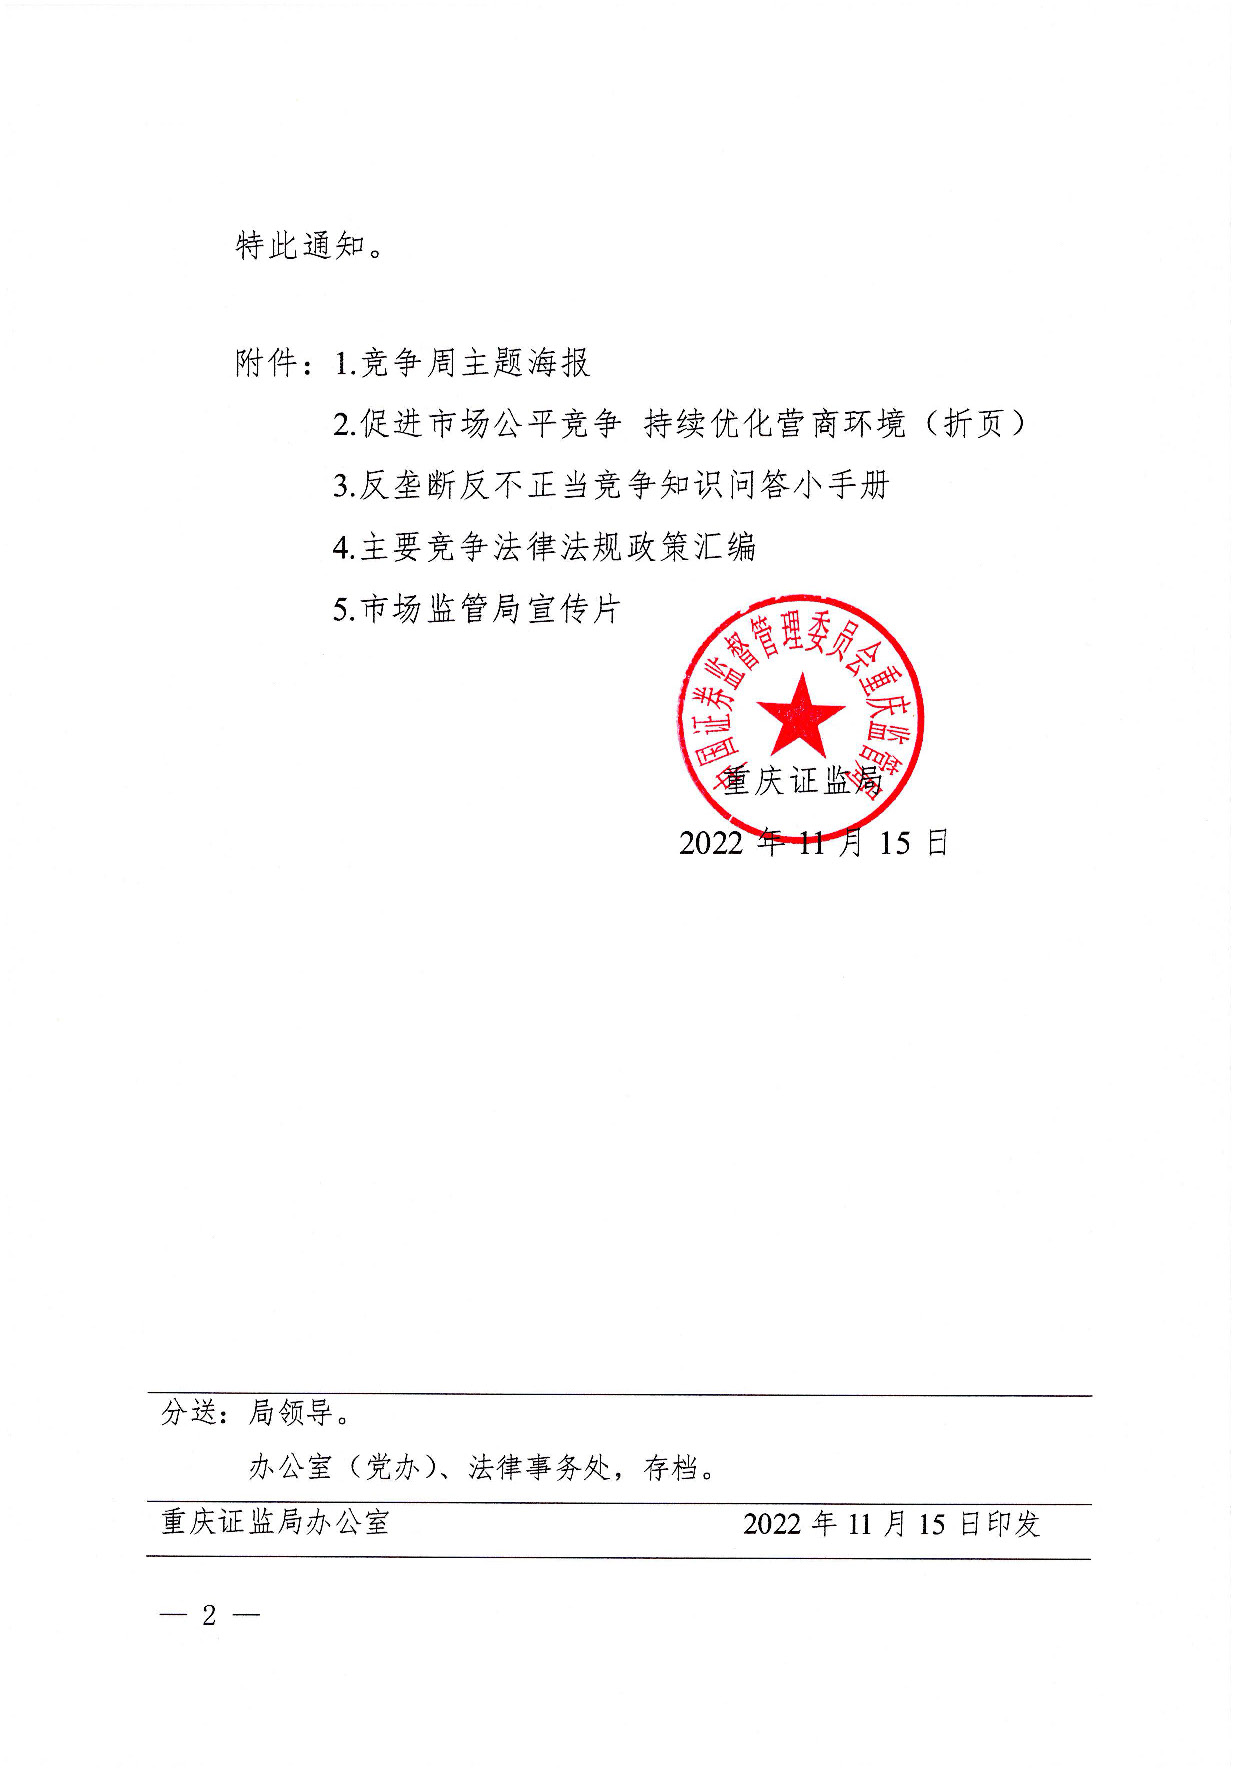 关于开展2022年中国公平竞争政策宣传周活动的通知_页面_2.jpg